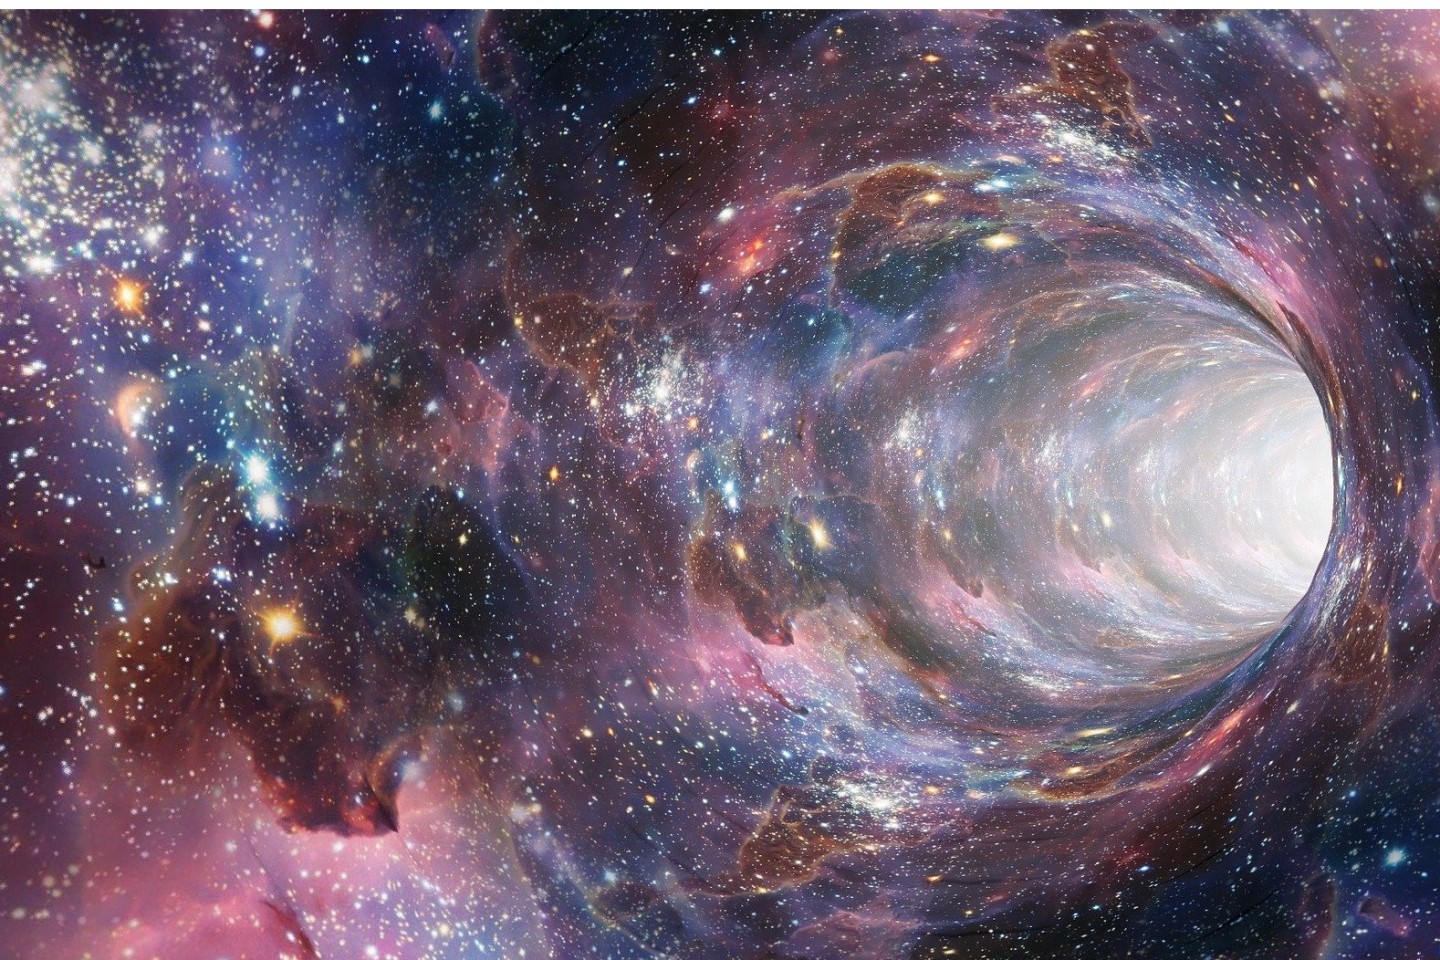 Um Galaxien und schwarze Löcher geht es in dem Online-Vortrag am Mittwoch, 9. März, um 19.30 Uhr. © Foto by Pixabay